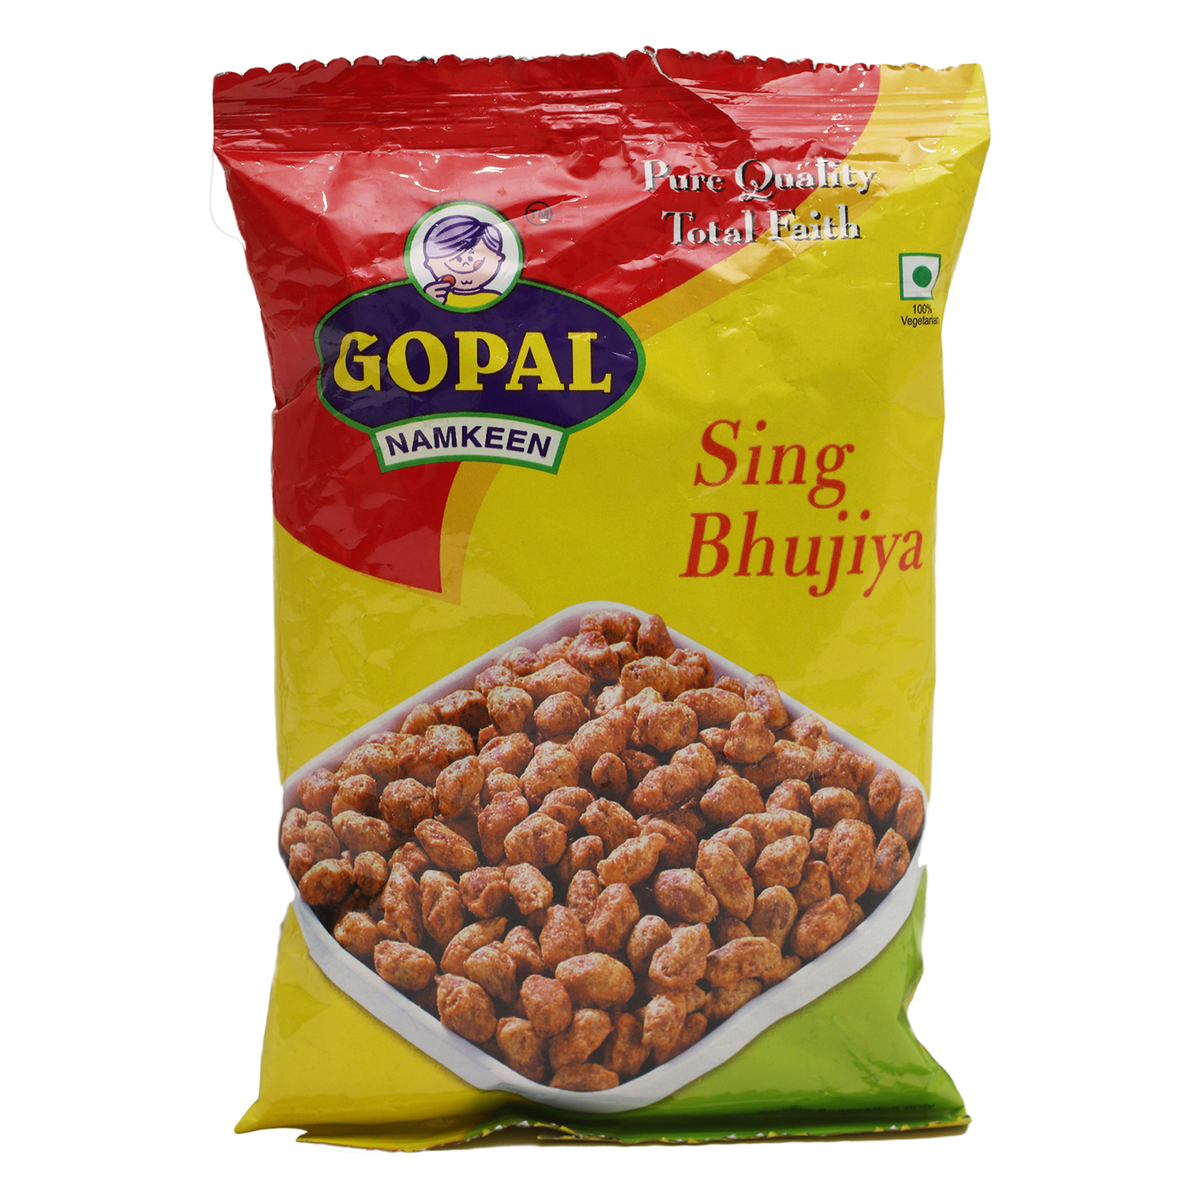 Gopal Sing Bhujiya 85g